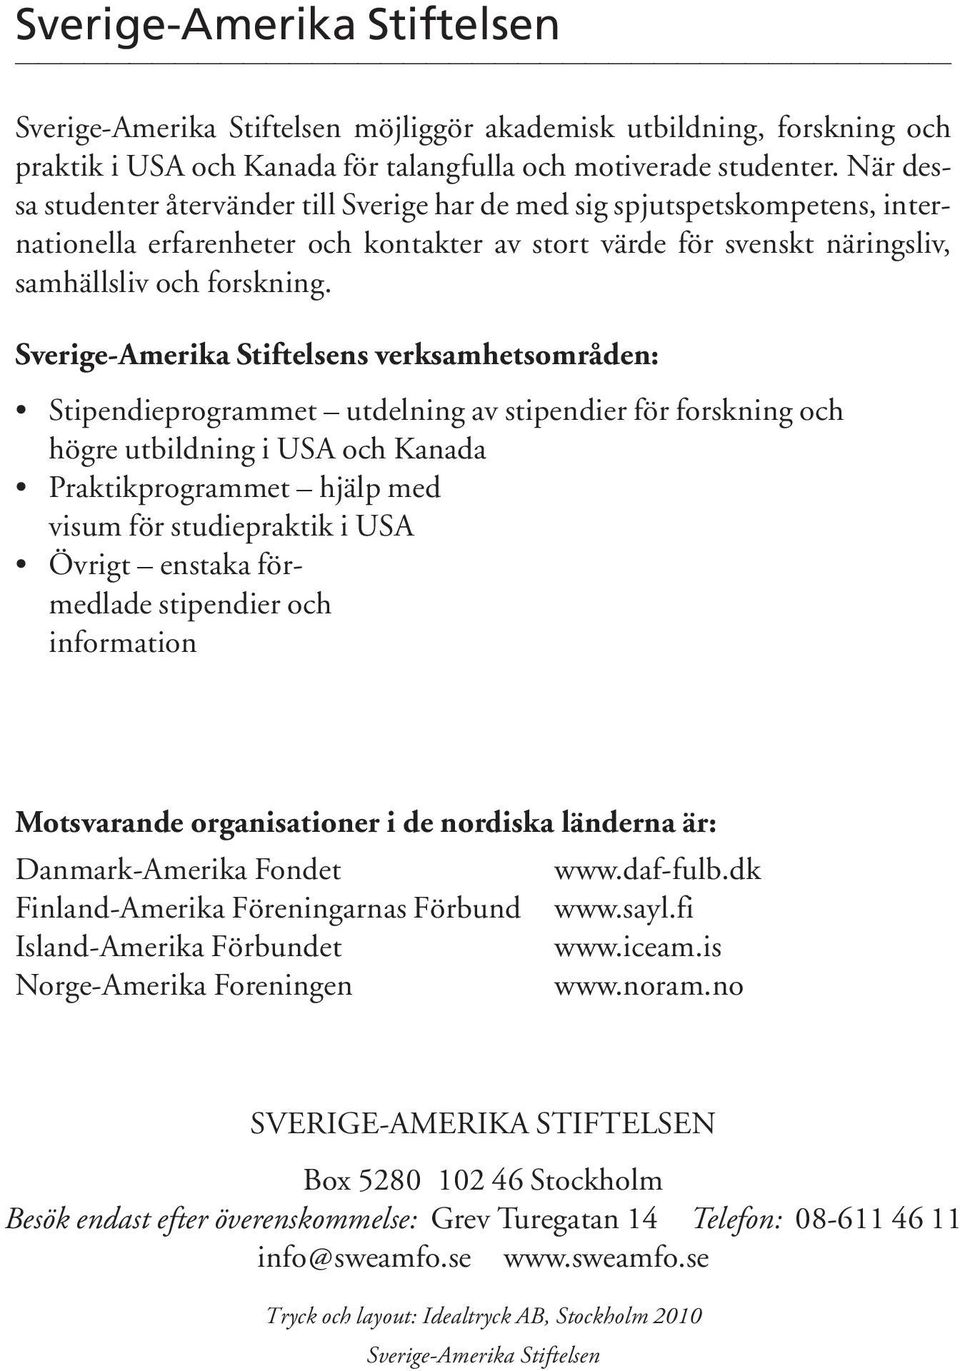 Sverige-Amerika Stiftelsens verksamhetsområden: Stipendieprogrammet utdelning av stipendier för forskning och högre utbildning i USA och Kanada Praktikprogrammet hjälp med visum för studiepraktik i